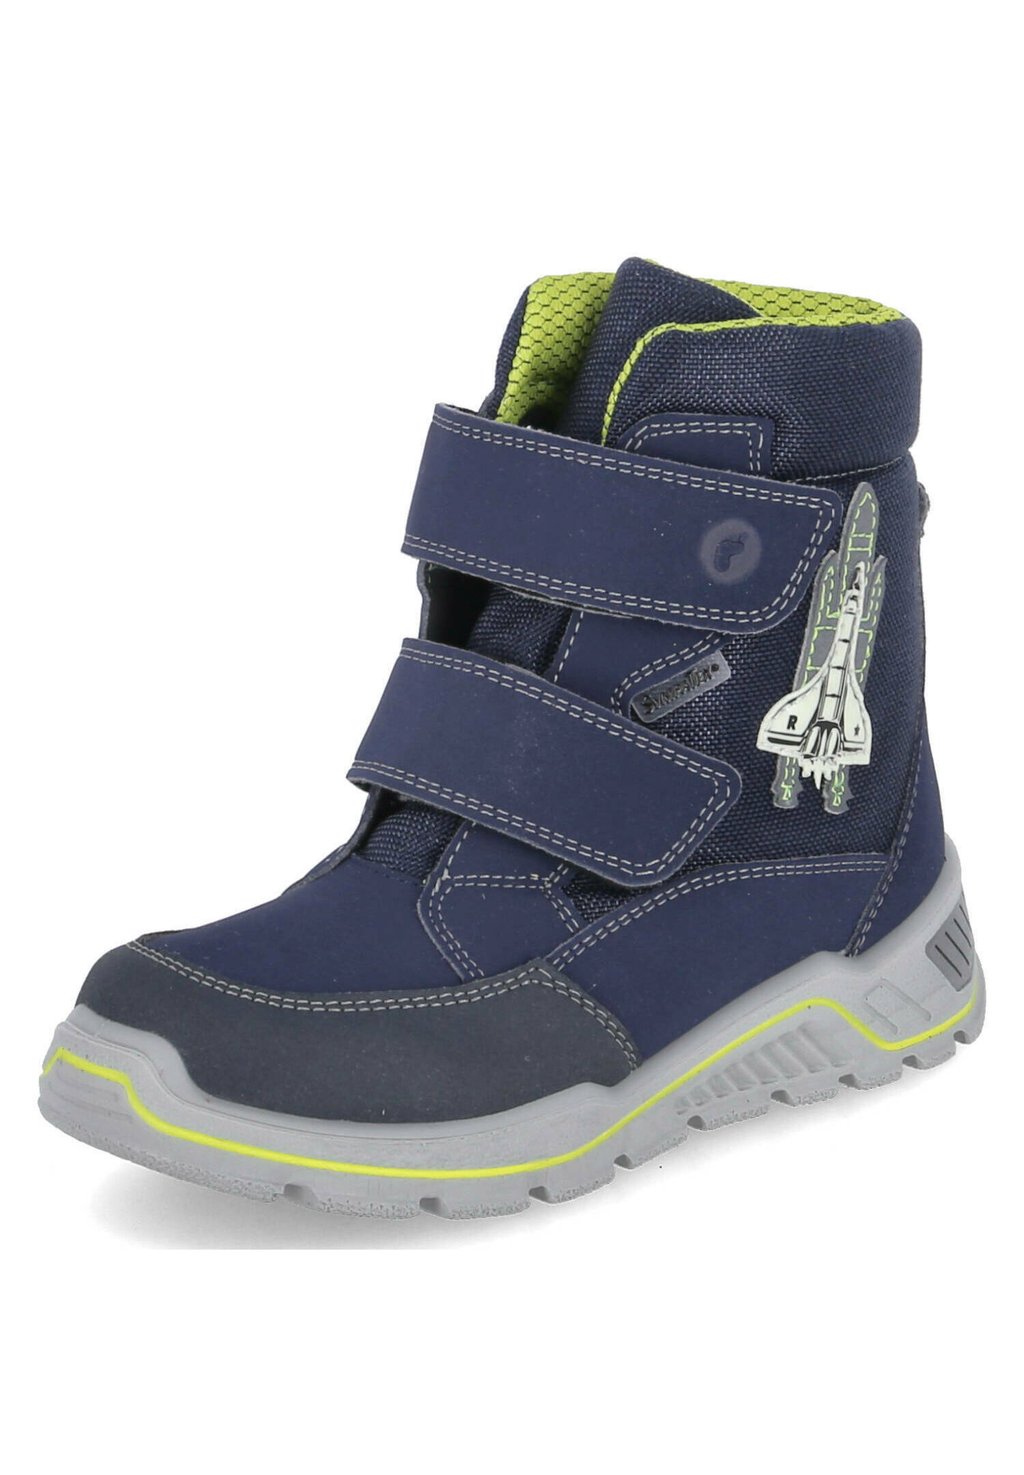 Зимние ботинки/зимние ботинки ALIX Ricosta, цвет blau снегоступы зимние ботинки ricosta цвет pavone nebel